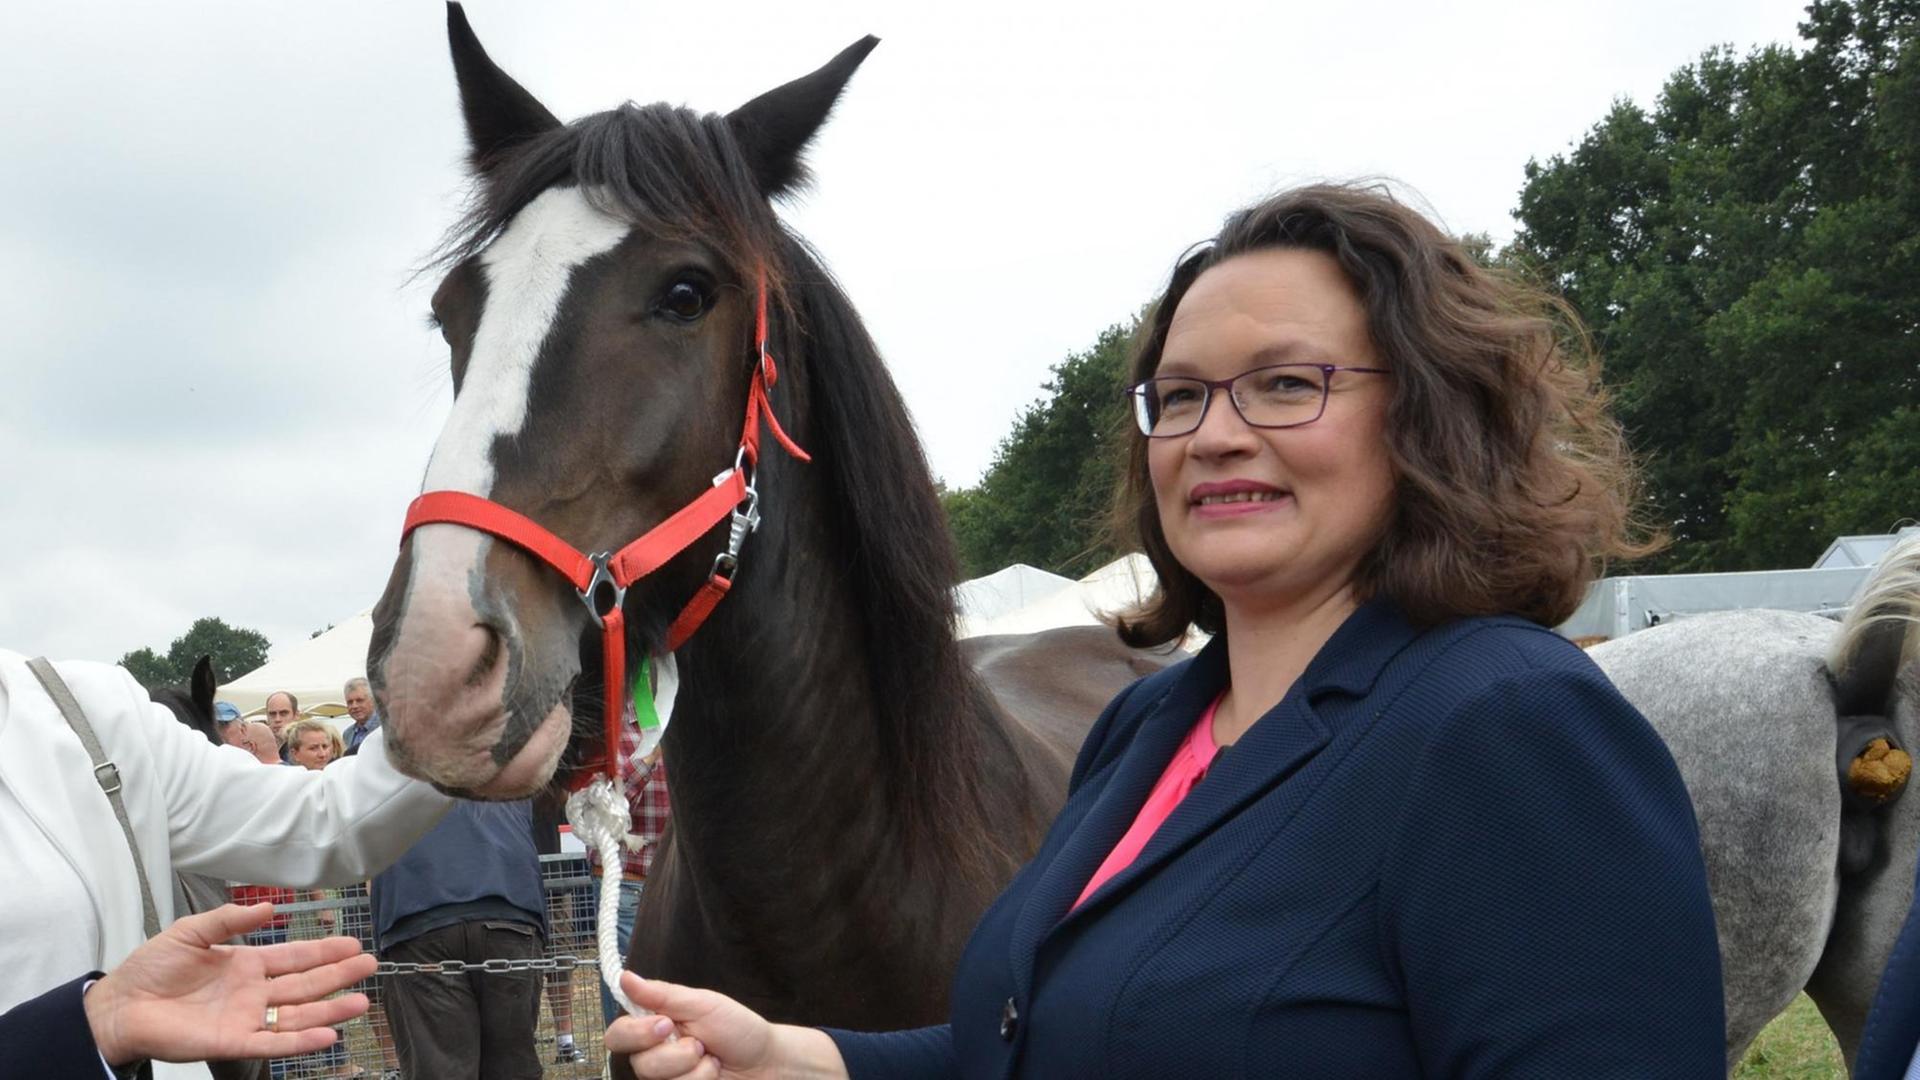 Andrea Nahles, SPD-Parteivorsitzende, besucht einen Pferdemarkt, der während des Stoppelmarktes abgehalten wird und steht dabei neben einem Pferd.